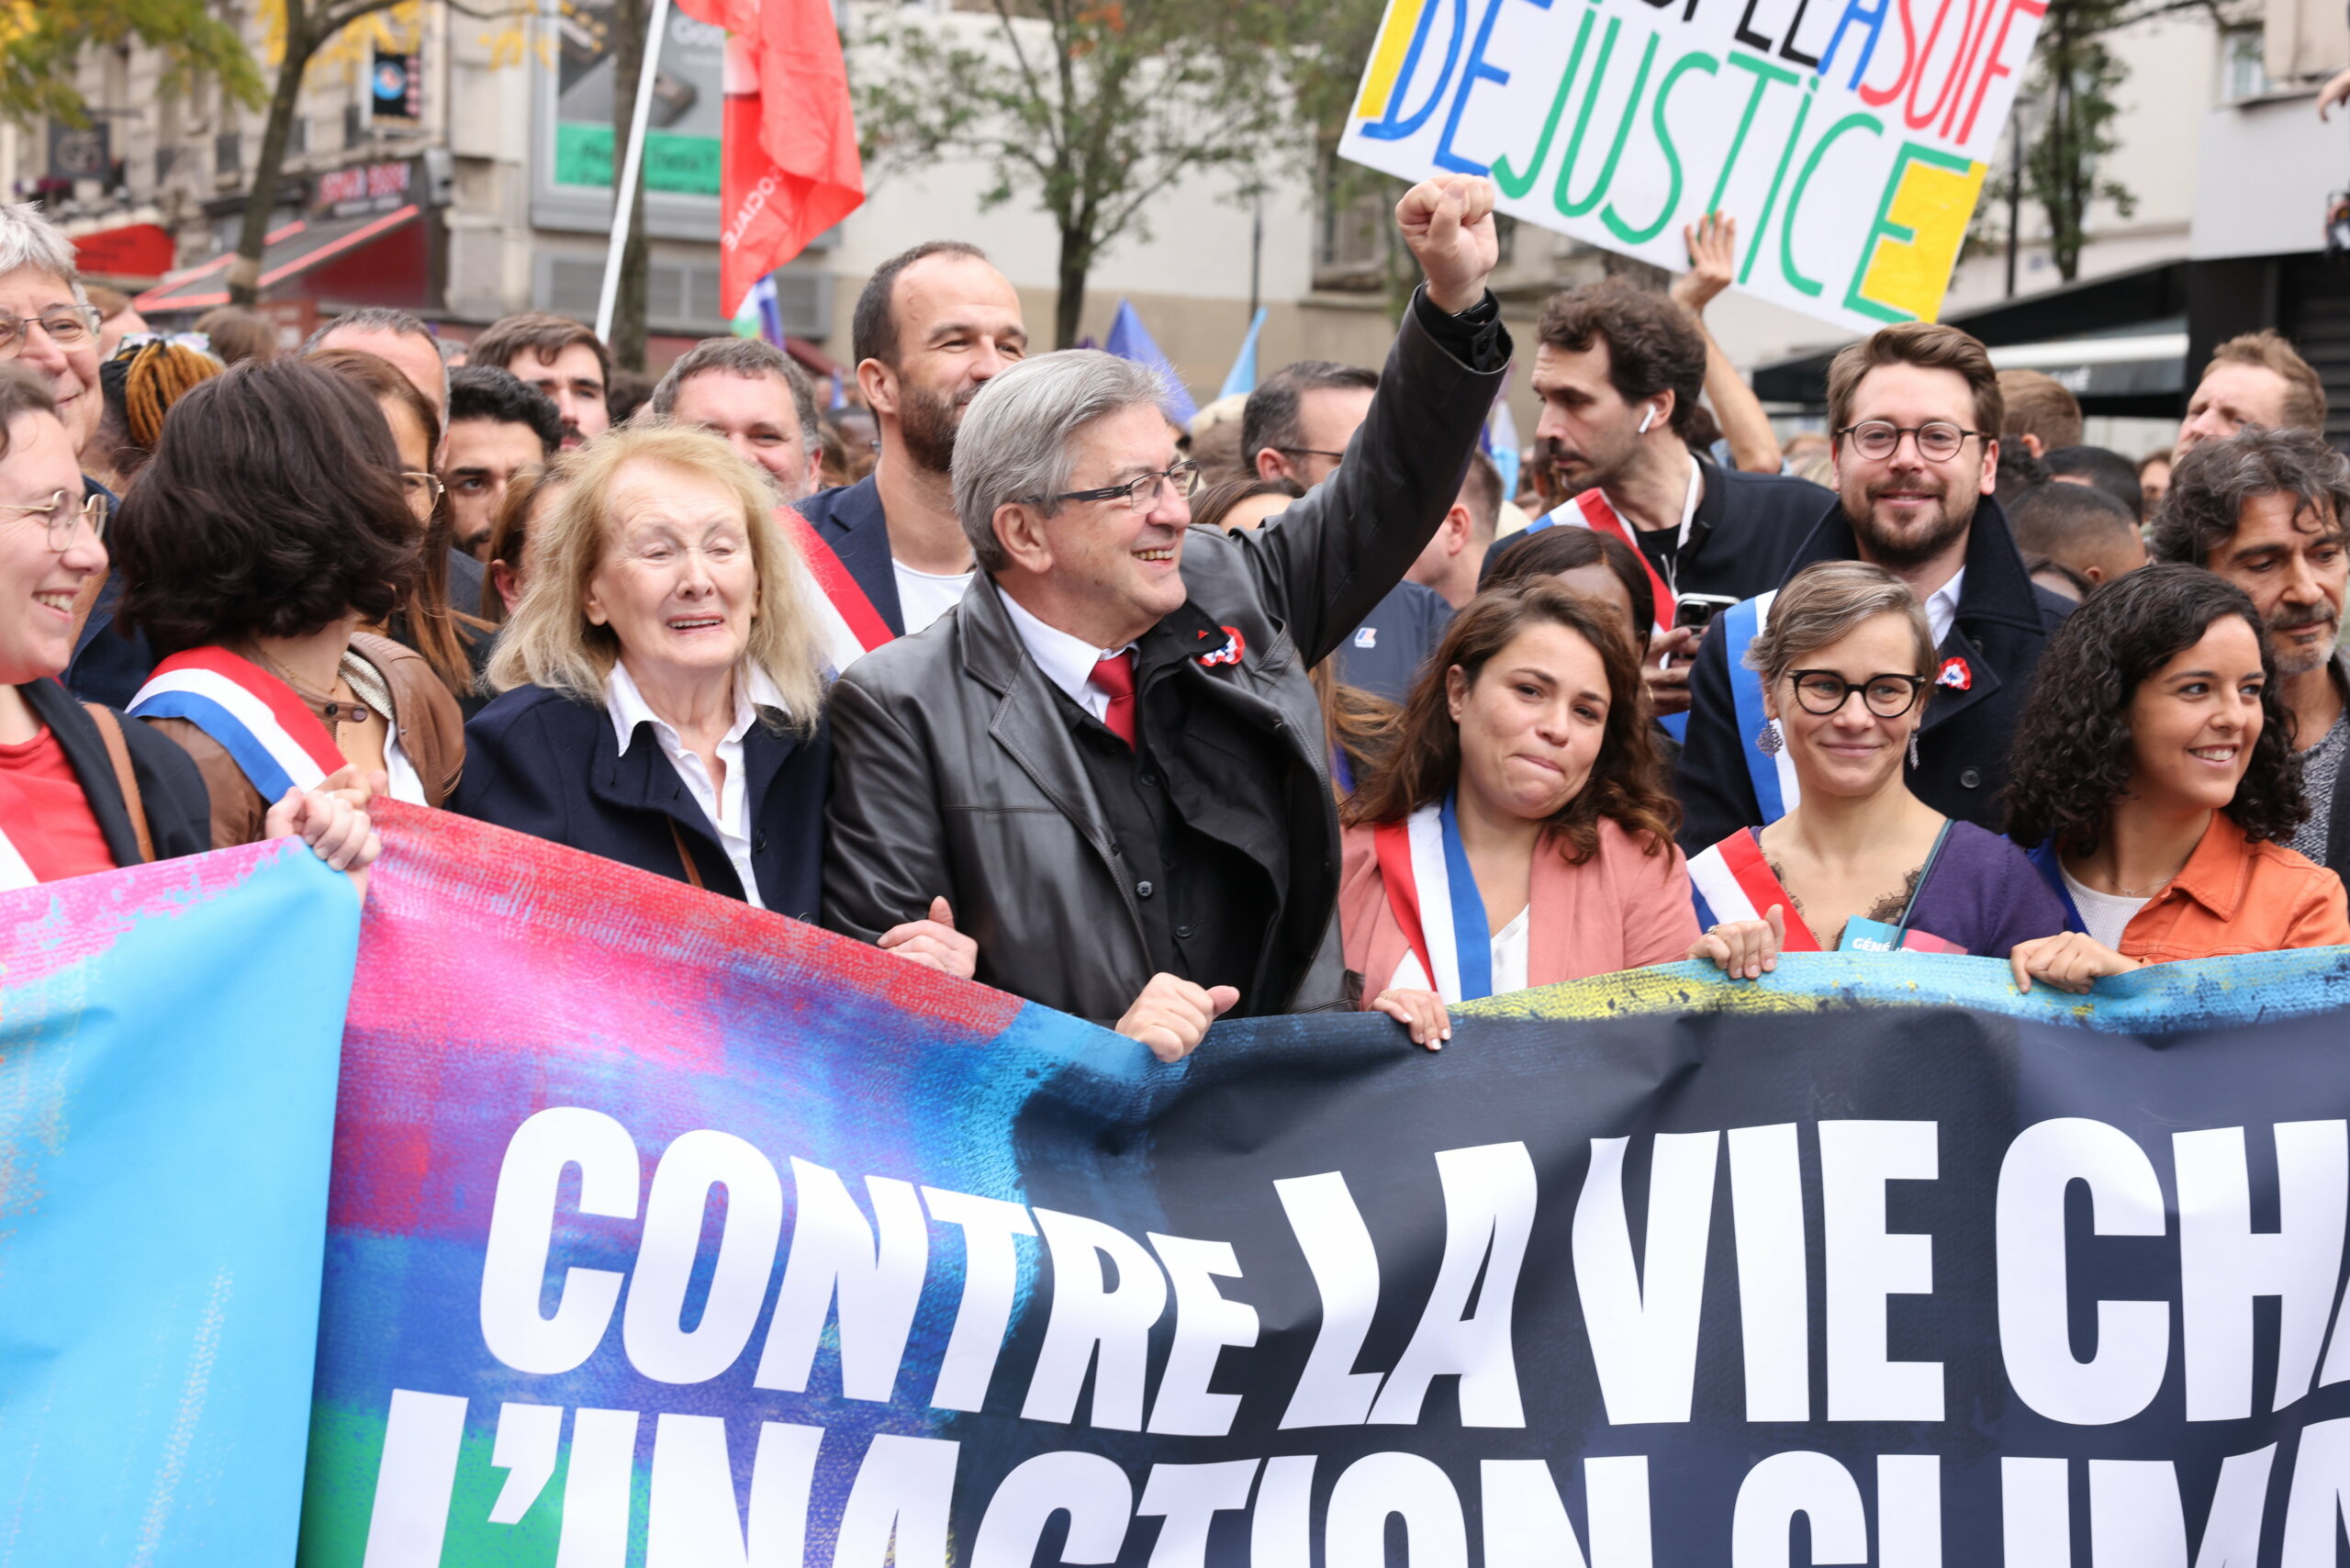 La izquierda francesa une fuerzas para frenar a Le Pen en un "nuevo frente popular"